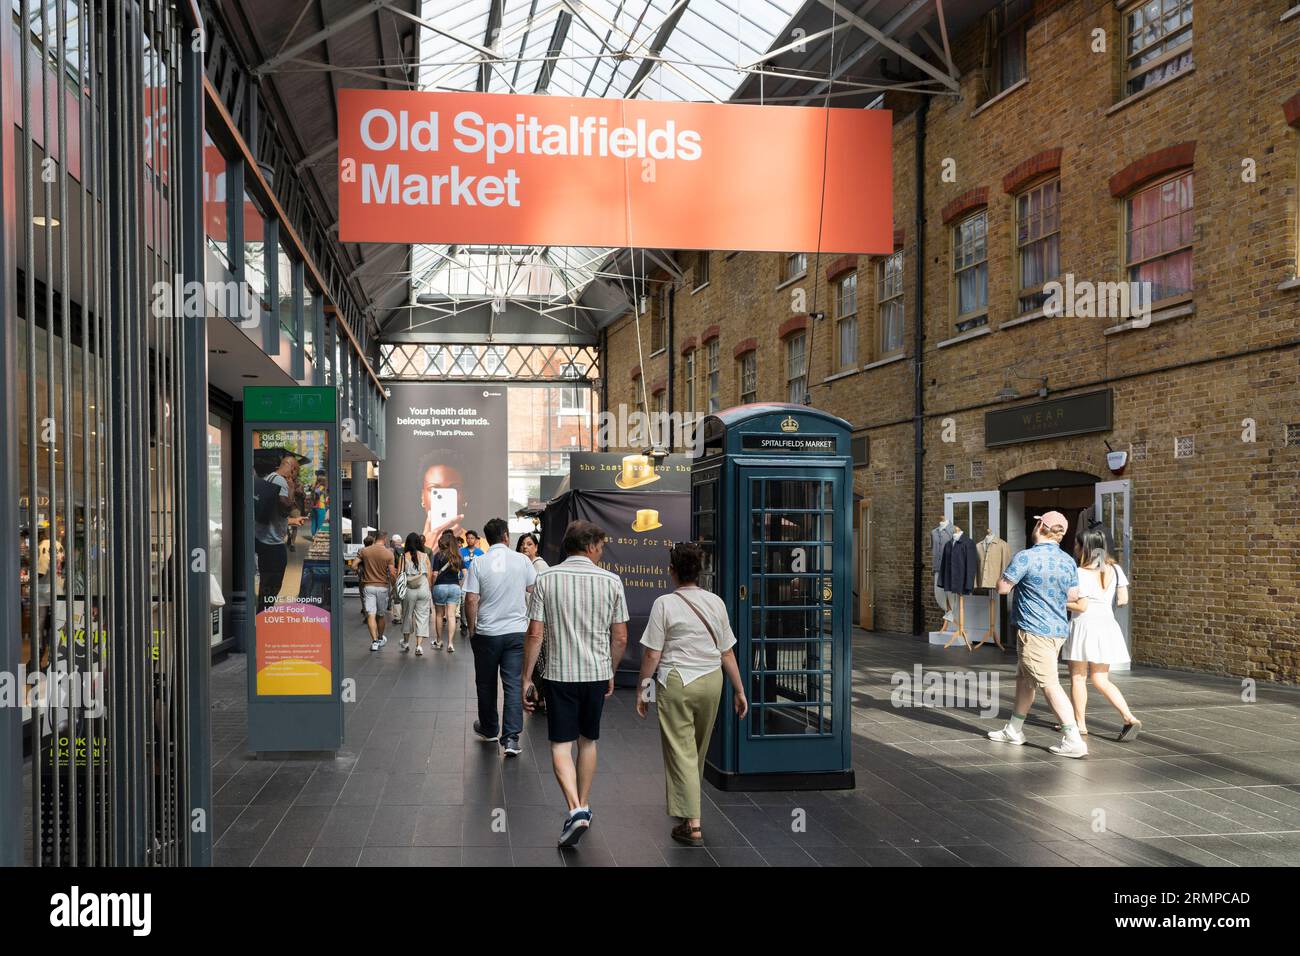 Leute, die durch den überdachten Old Spitalfields Markt gehen, mit einem großen Werbeschild oben und einer grünen Telefonbox. London, England Stockfoto